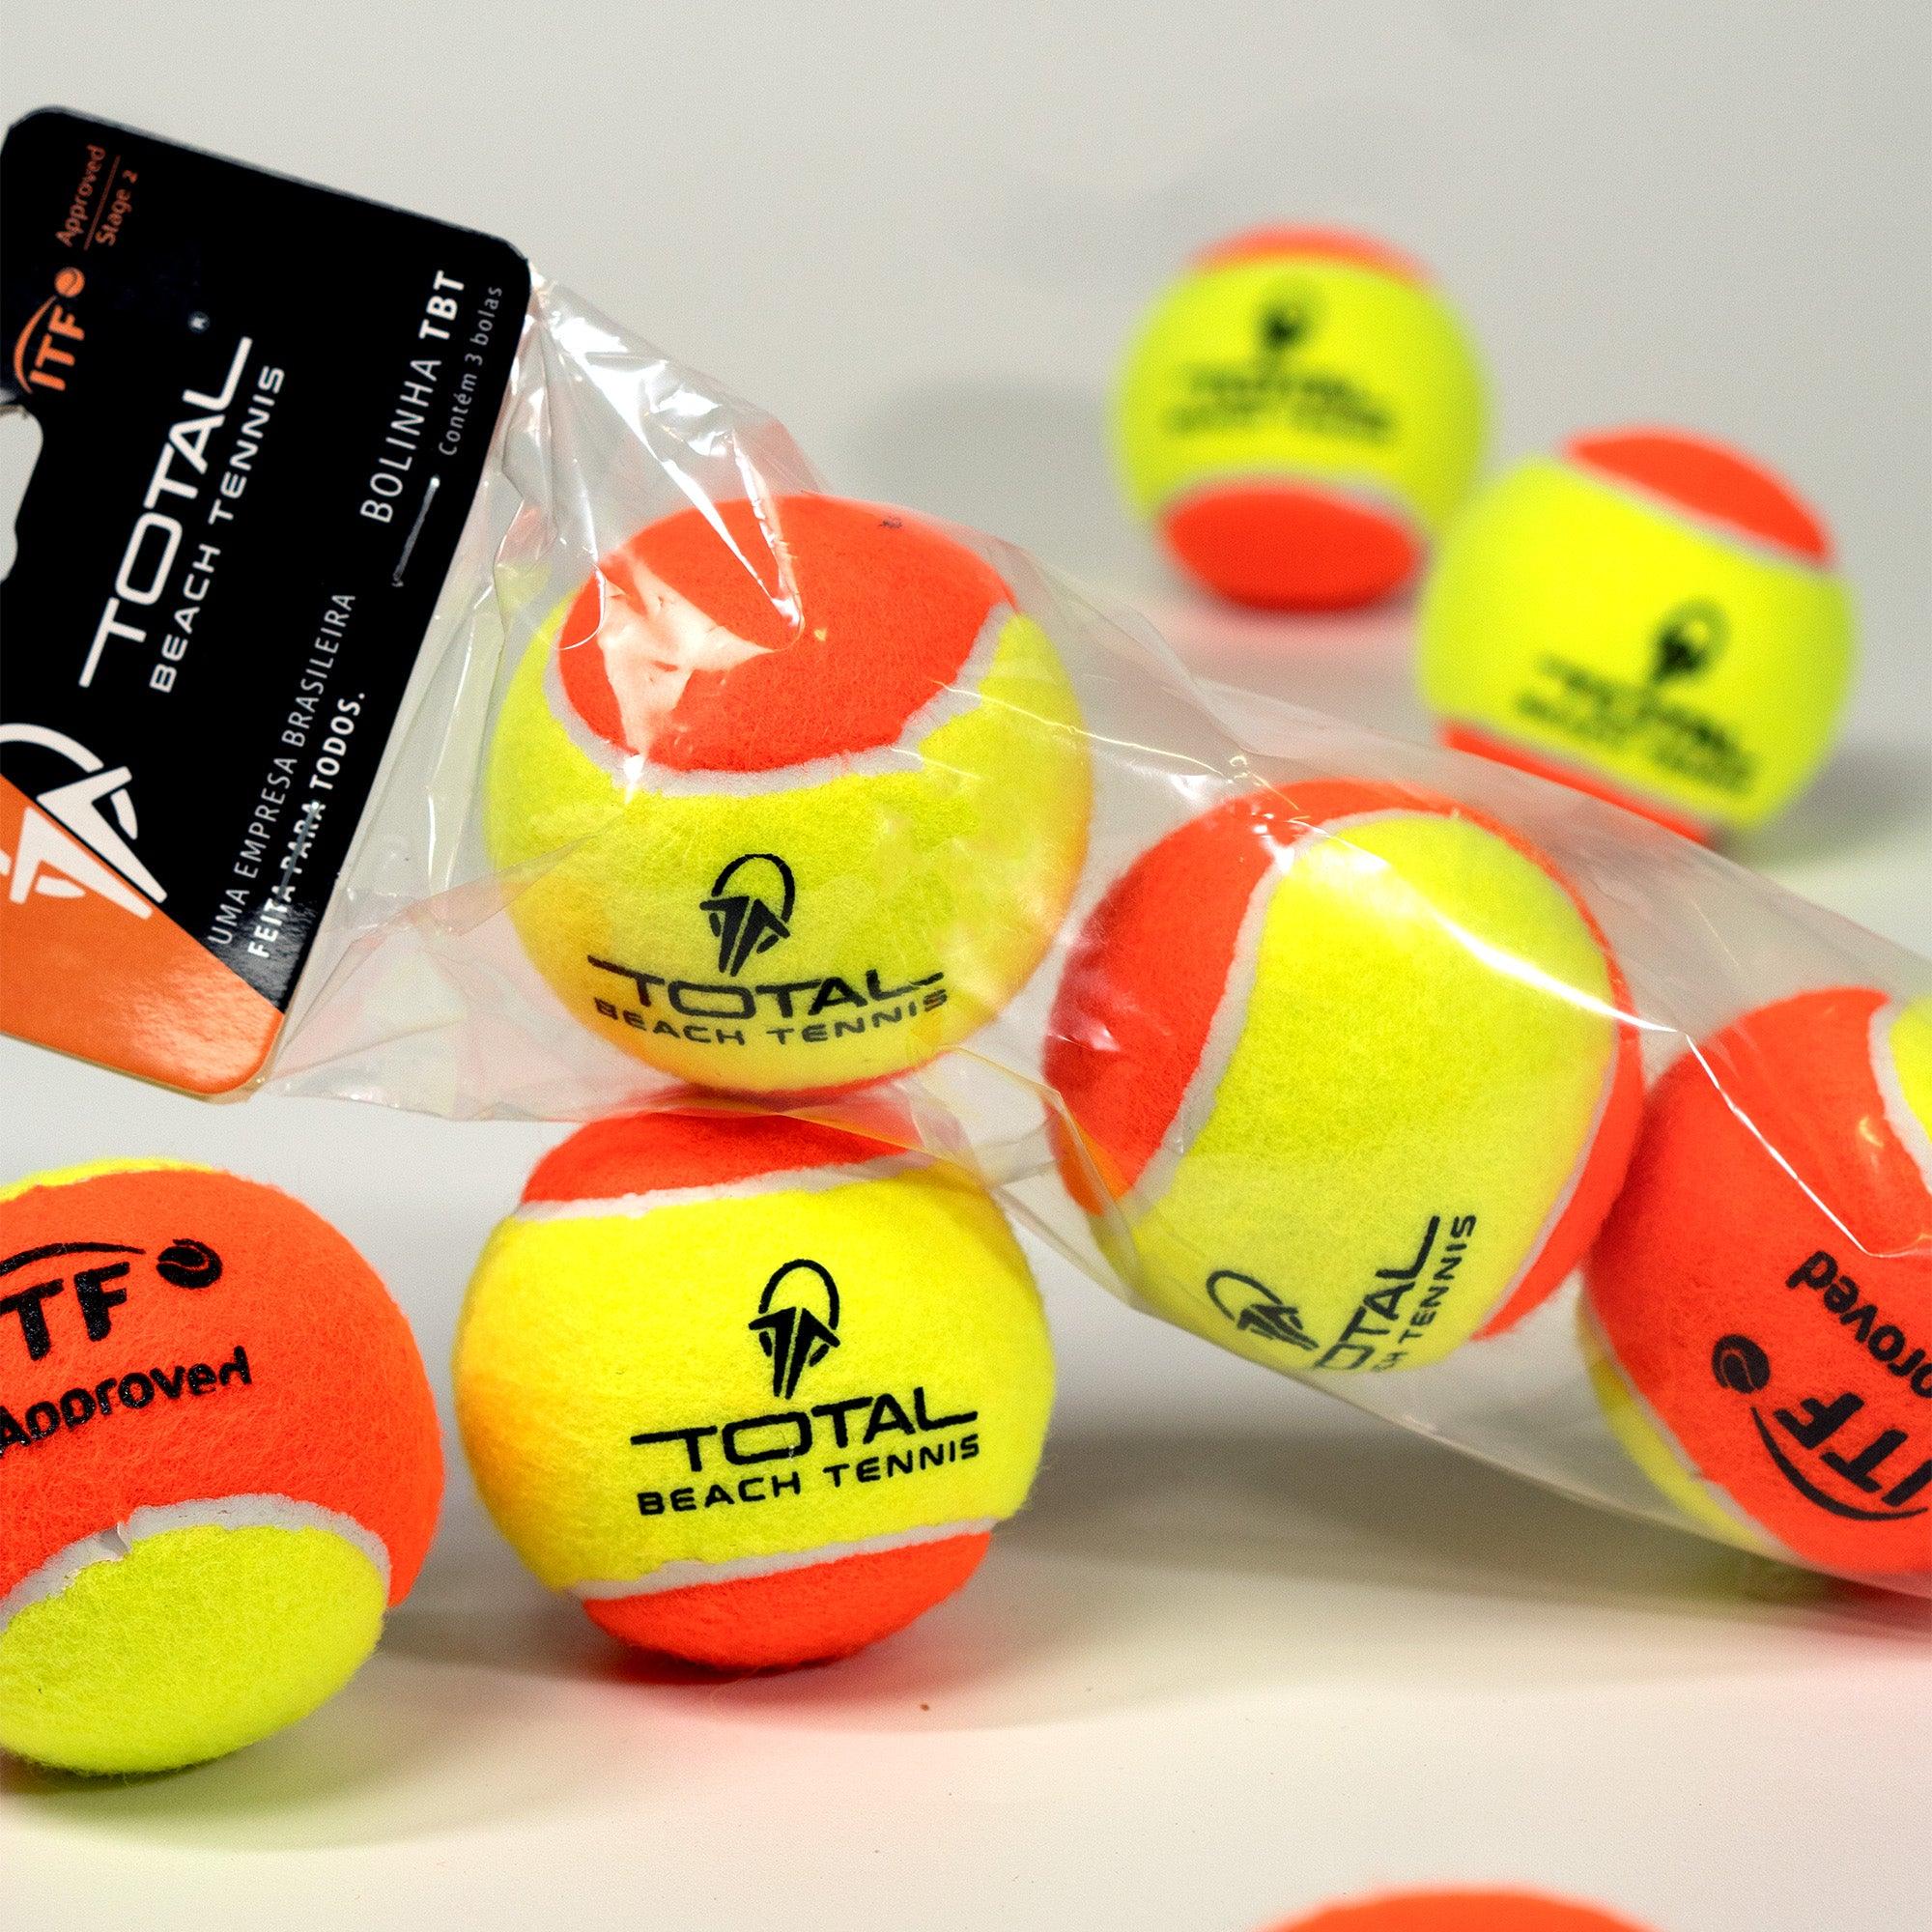 Bola para Beach Tennis TBT ITF Approved - 3 Unidades - Total Beach Tennis